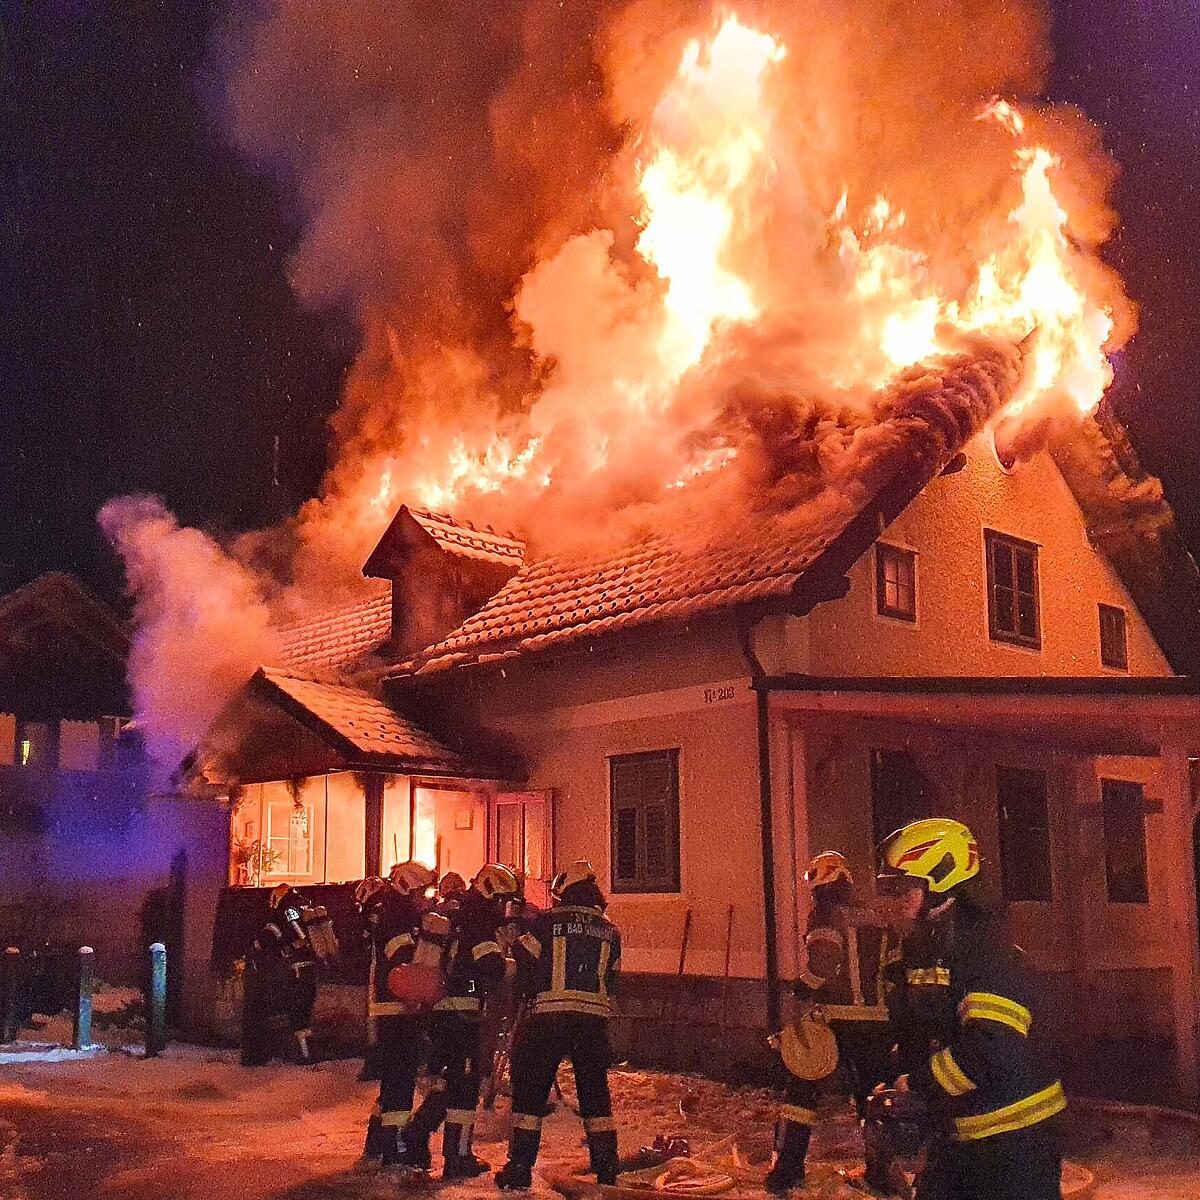 Wohnhaus in Flammen: 120 Feuerwehrleute löschten Großbrand in Bad Goisern